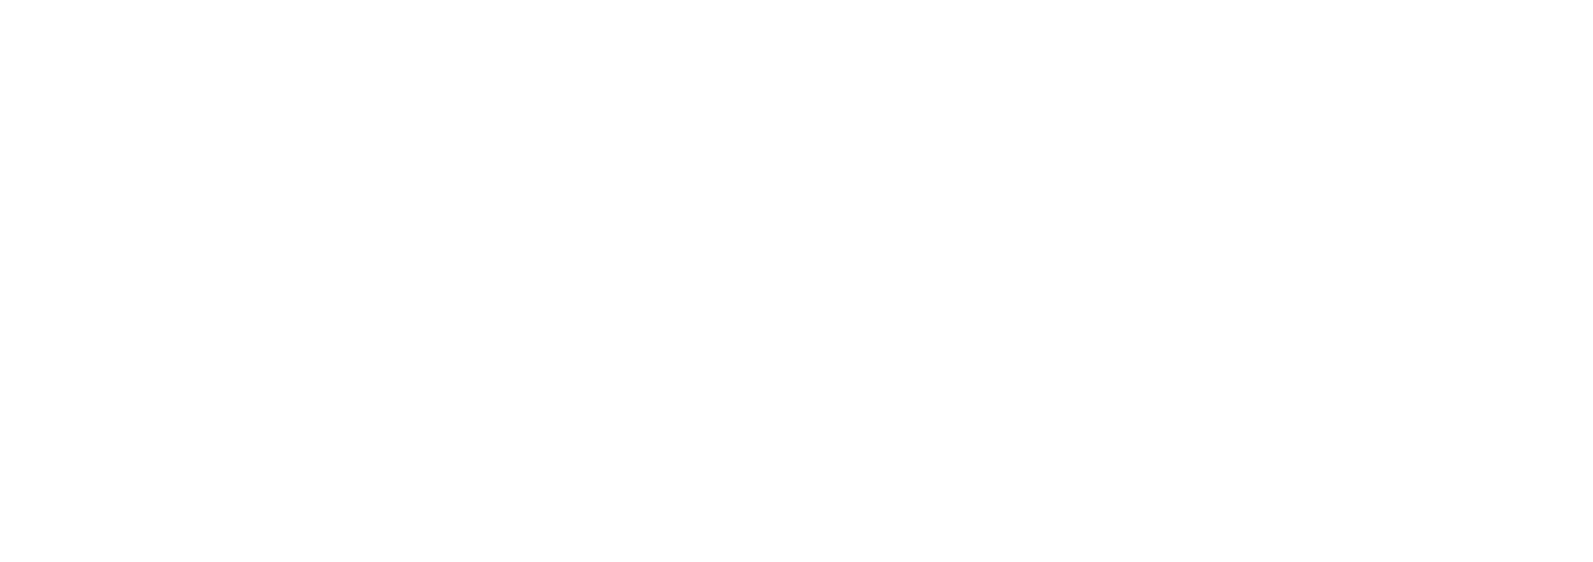 Nxu logo grand pour les fonds sombres (PNG transparent)